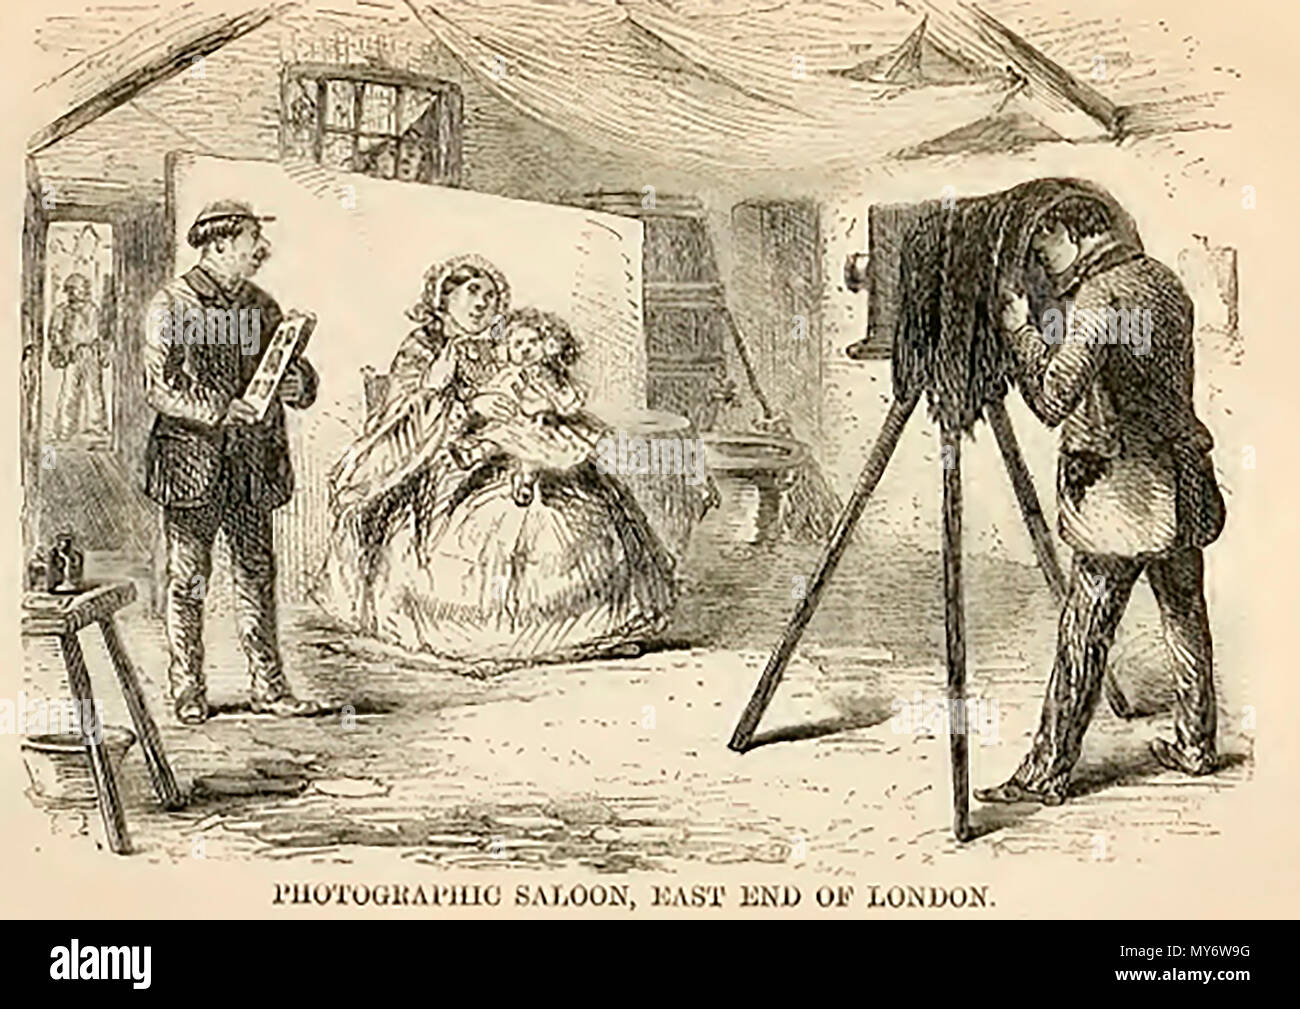 Un typique est de Londres tel qu'il était carré photographique a tracé dans les années 1800 Banque D'Images